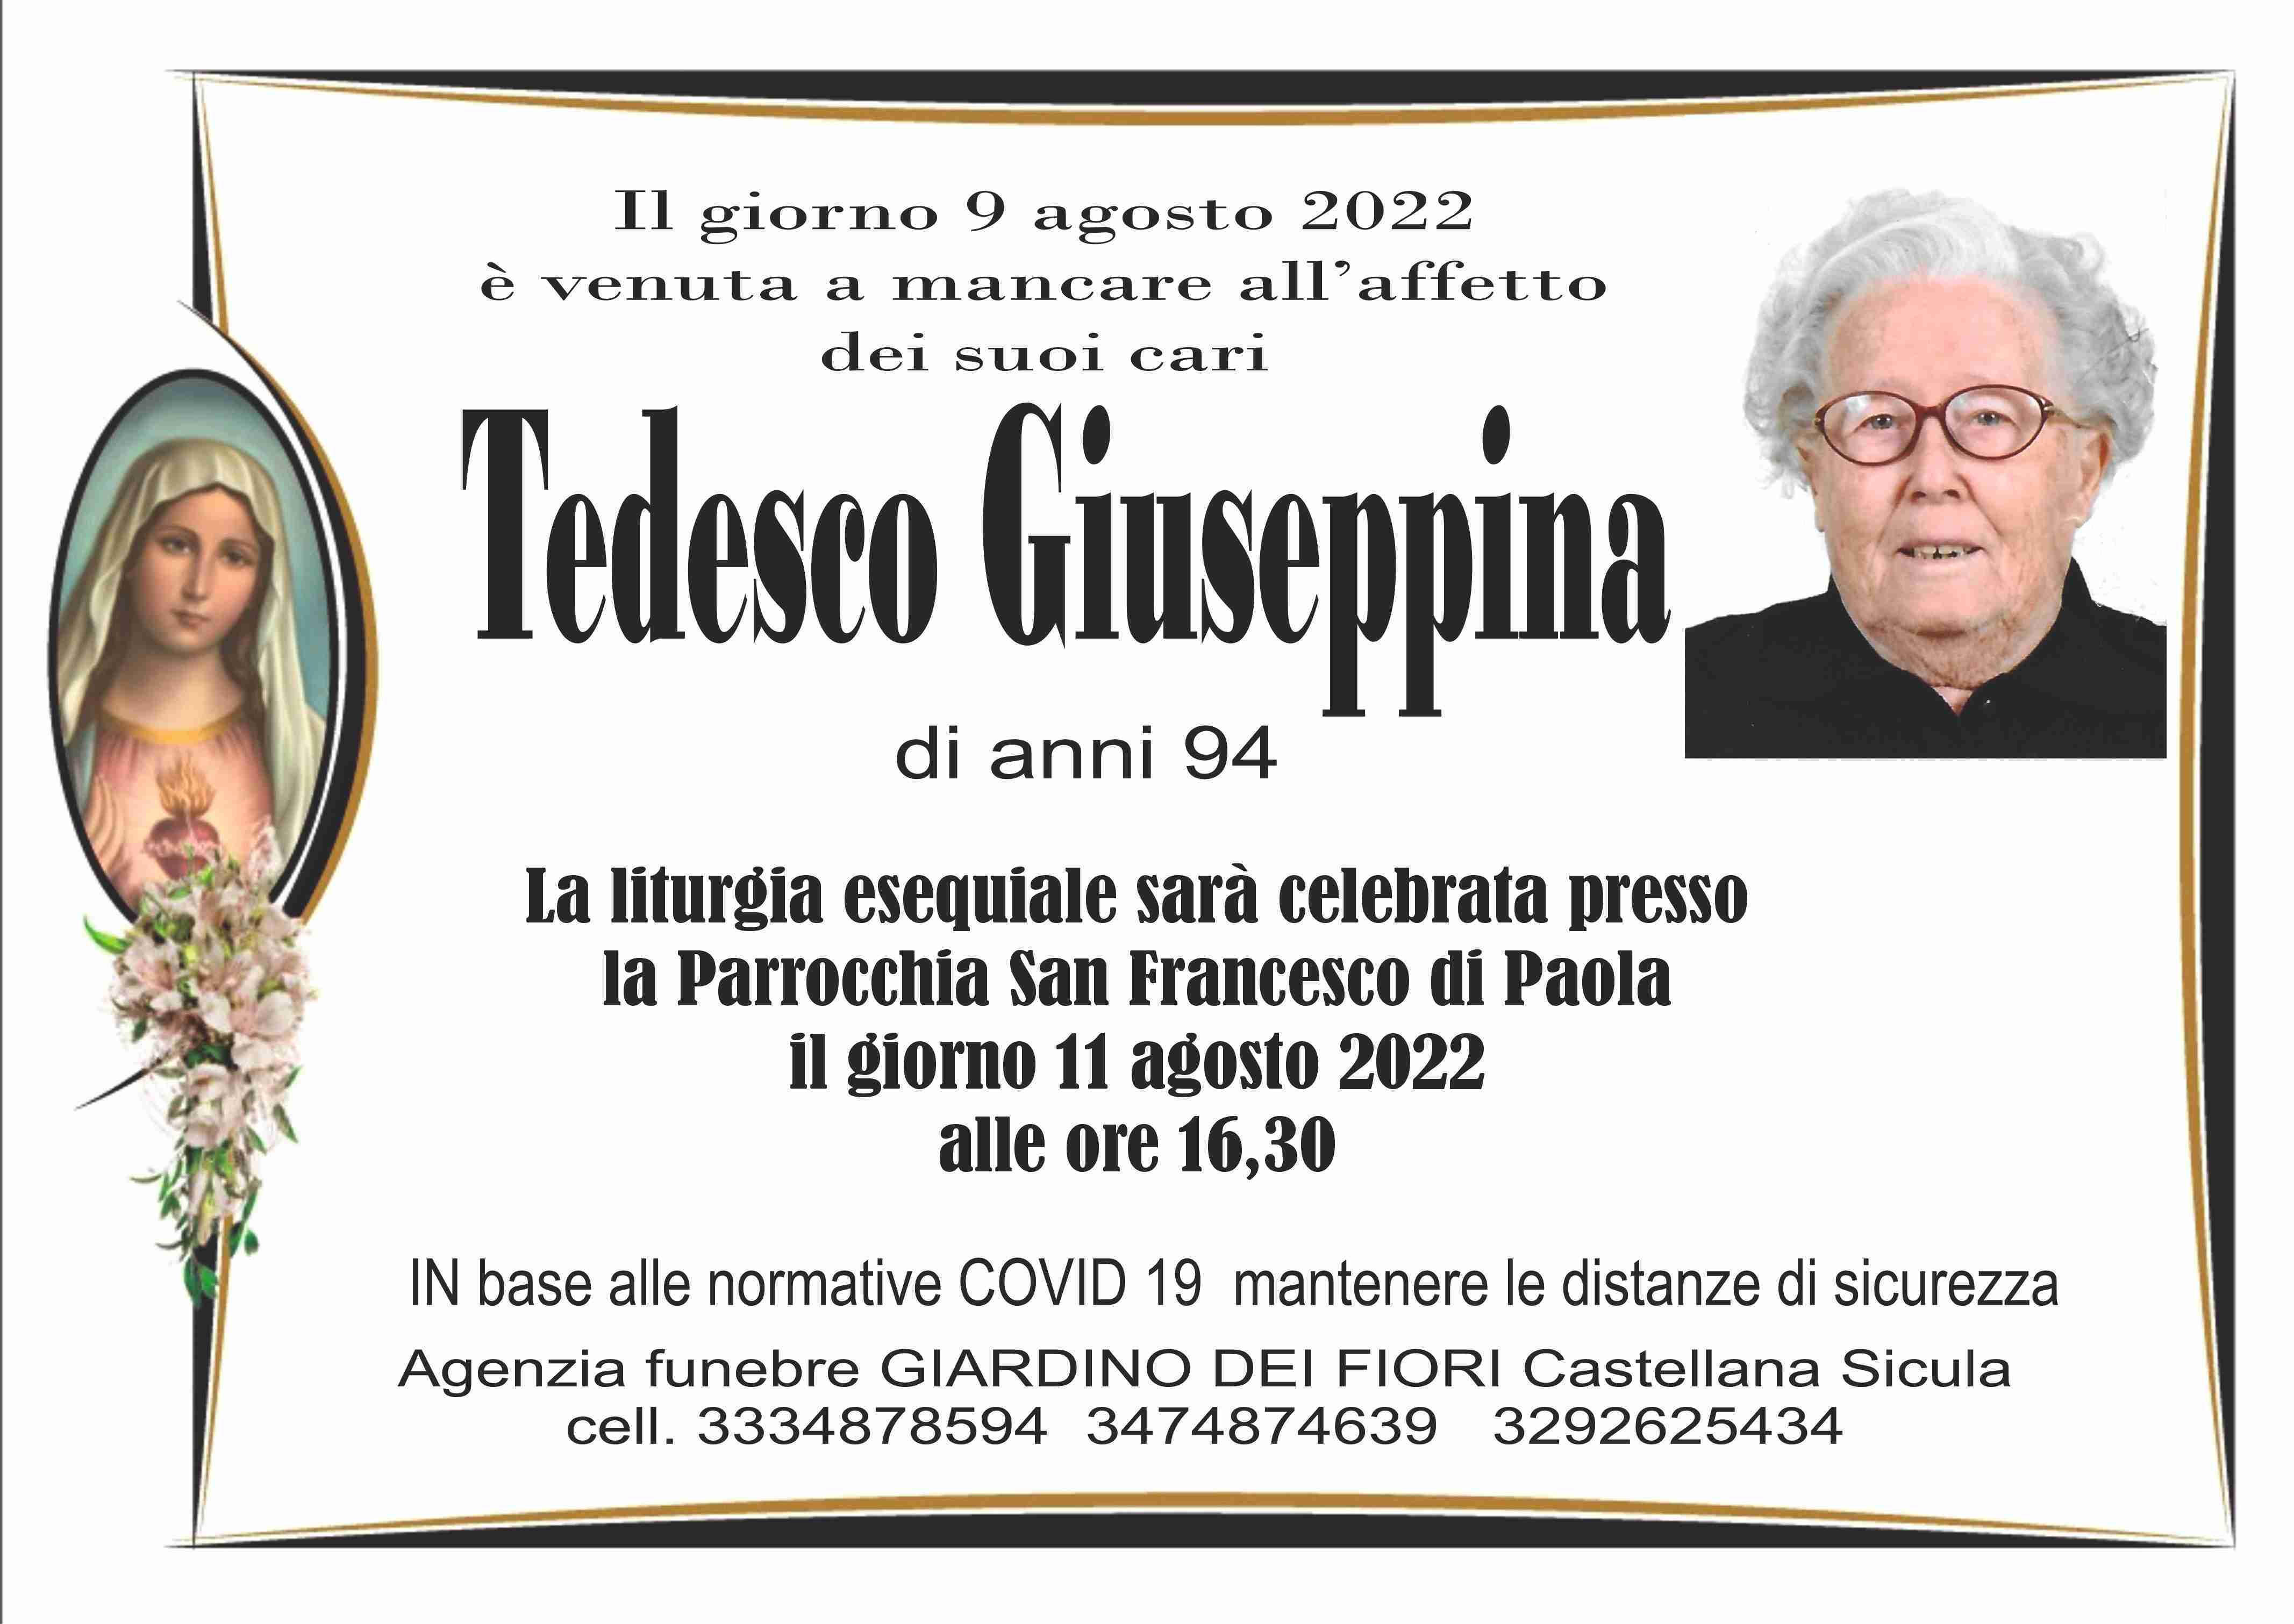 Giuseppina Tedesco